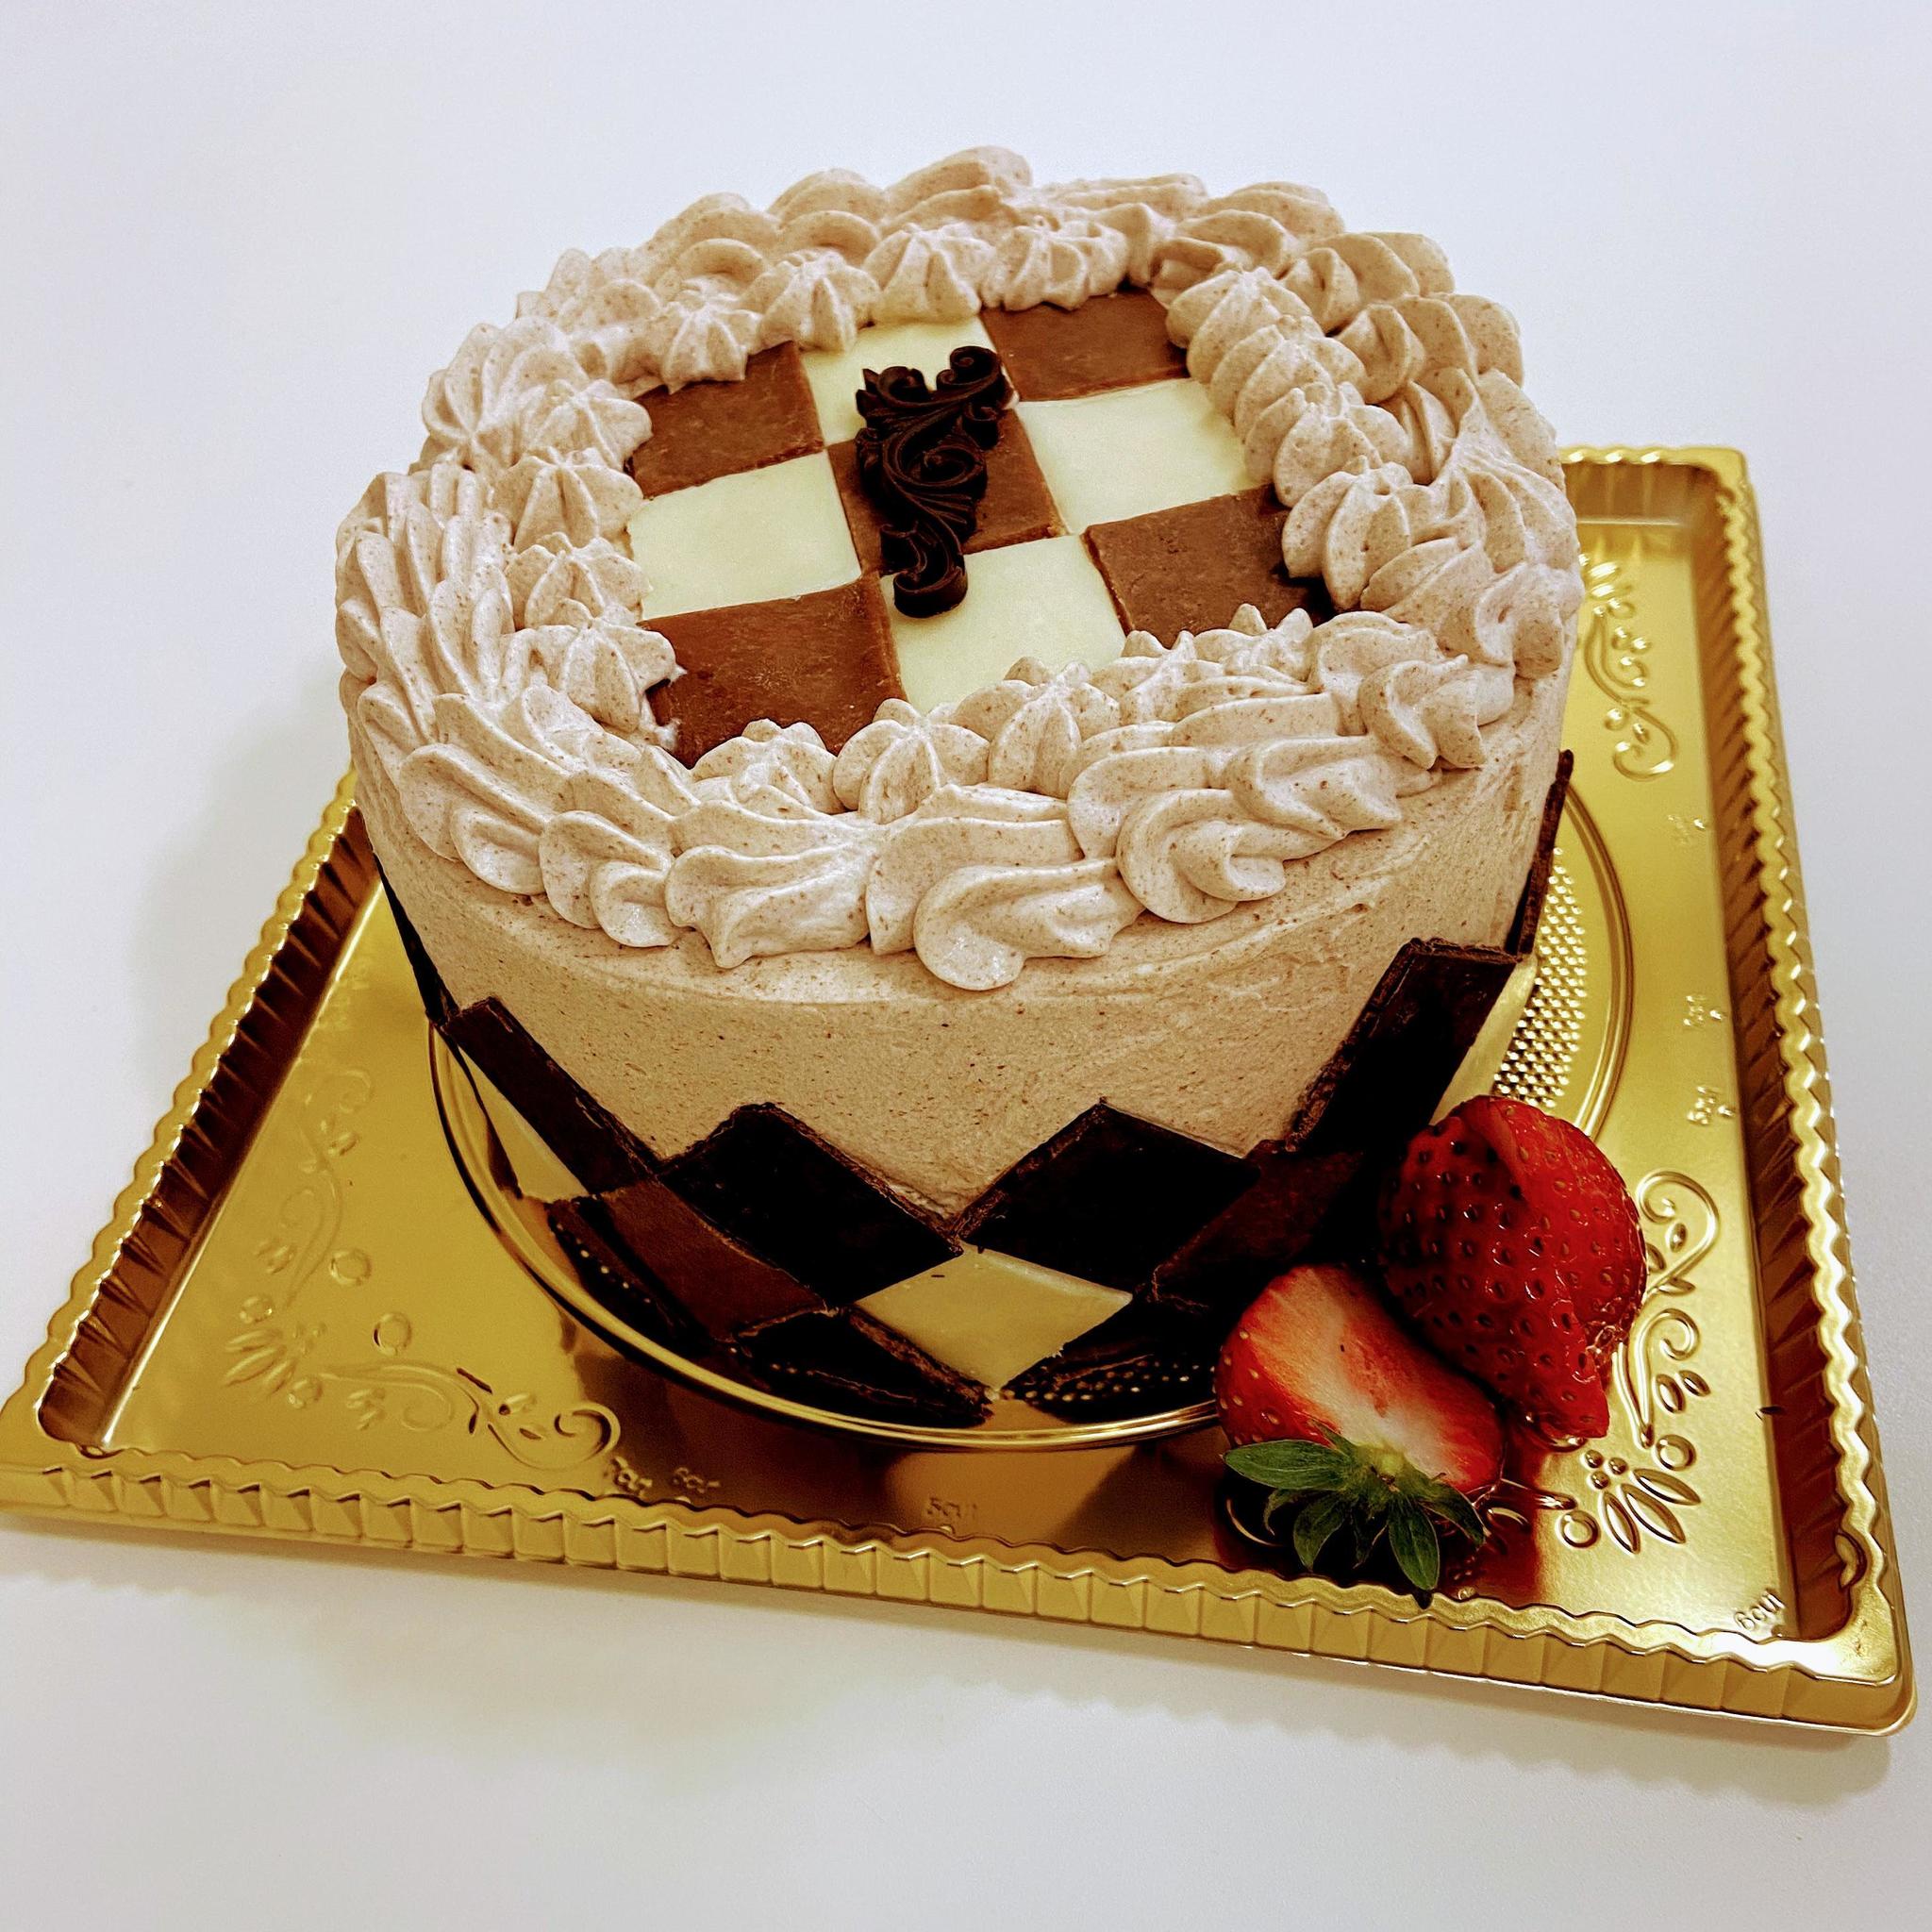 チョコレートクリームダミエケーキ 開催 パティスリー301 茨城県龍ケ崎市 の21年3月レッスン情報 料理教室検索サイト クスパ